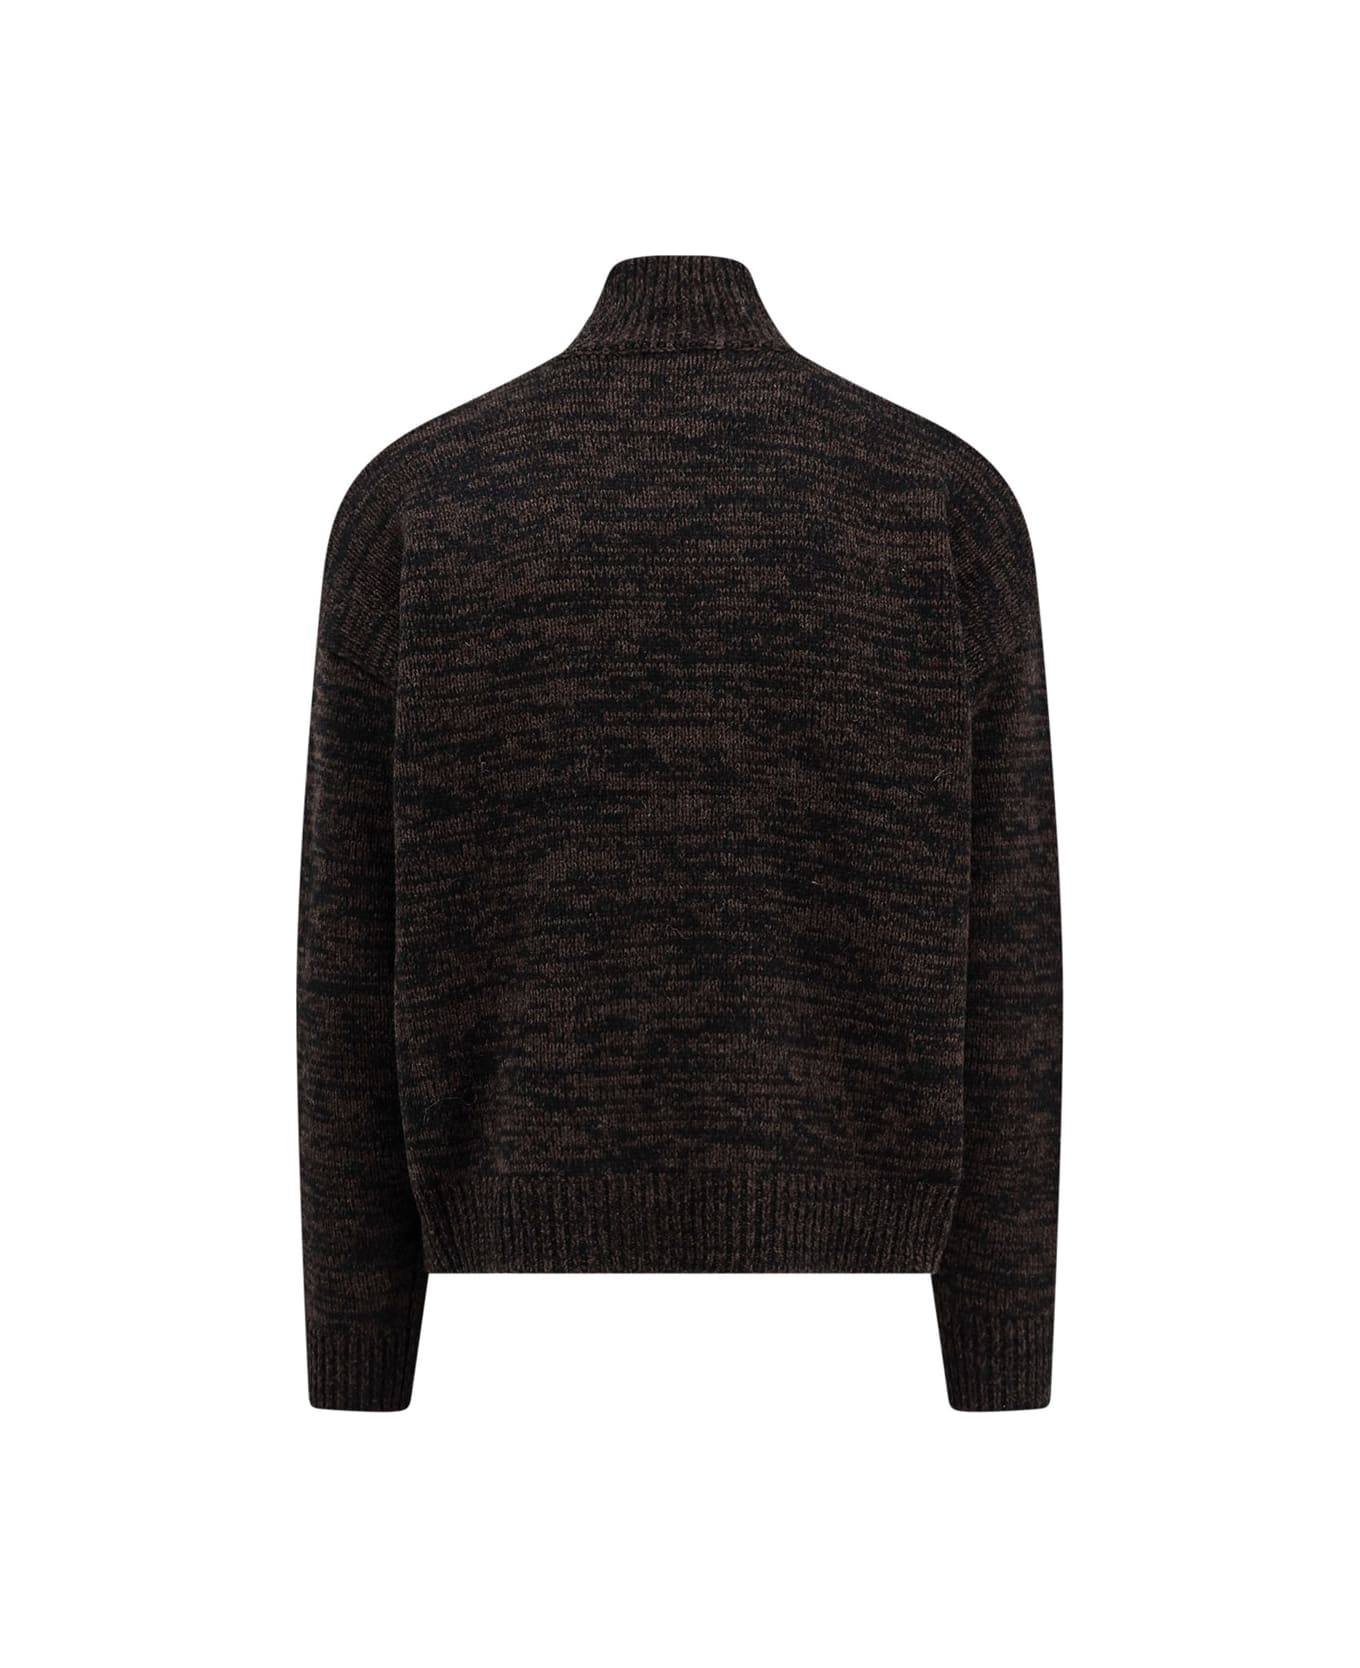 Études Sweater - Black